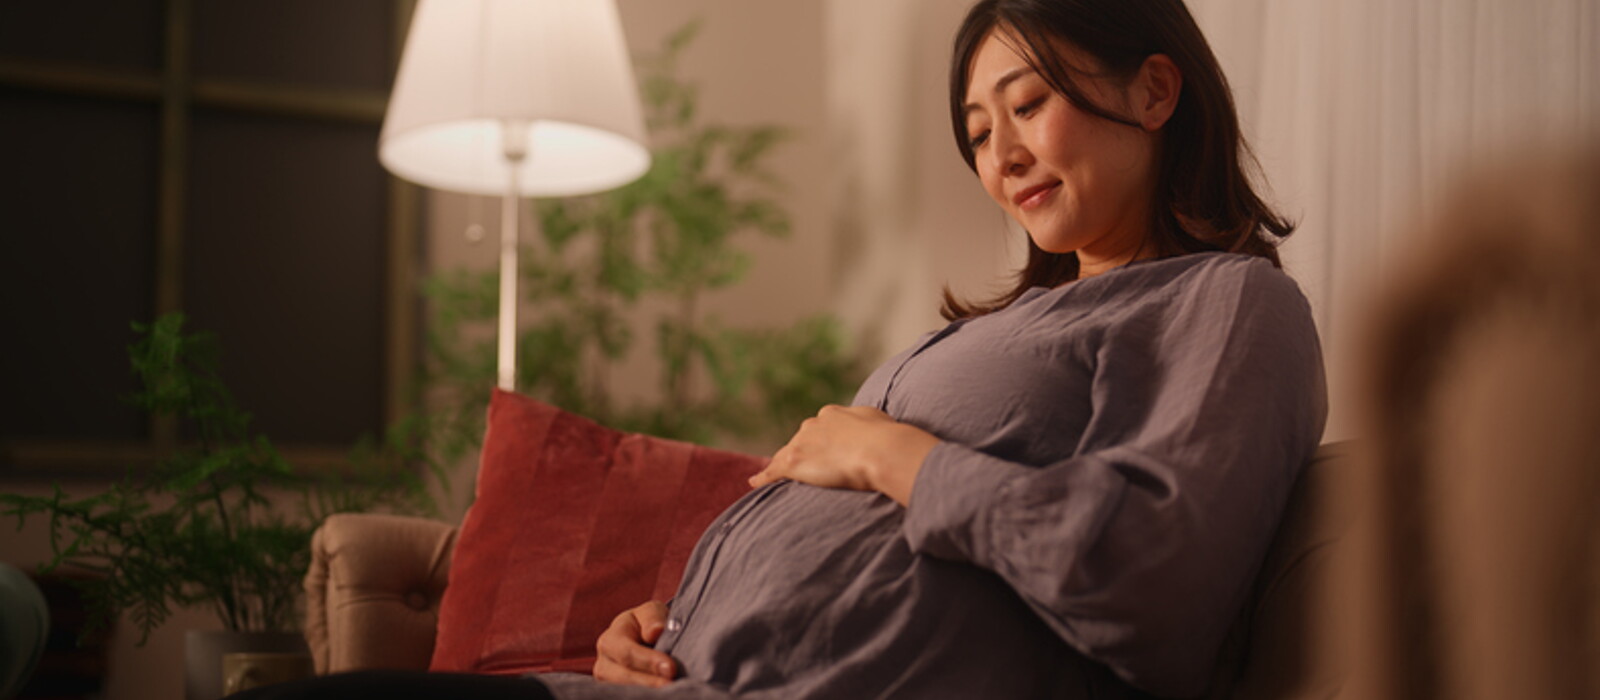 คุณแม่ท้อง 8 เดือน ลูกอยู่ท่าไหน อาการตั้งครรภ์ 8 เดือน ที่แม่ต้องรู้